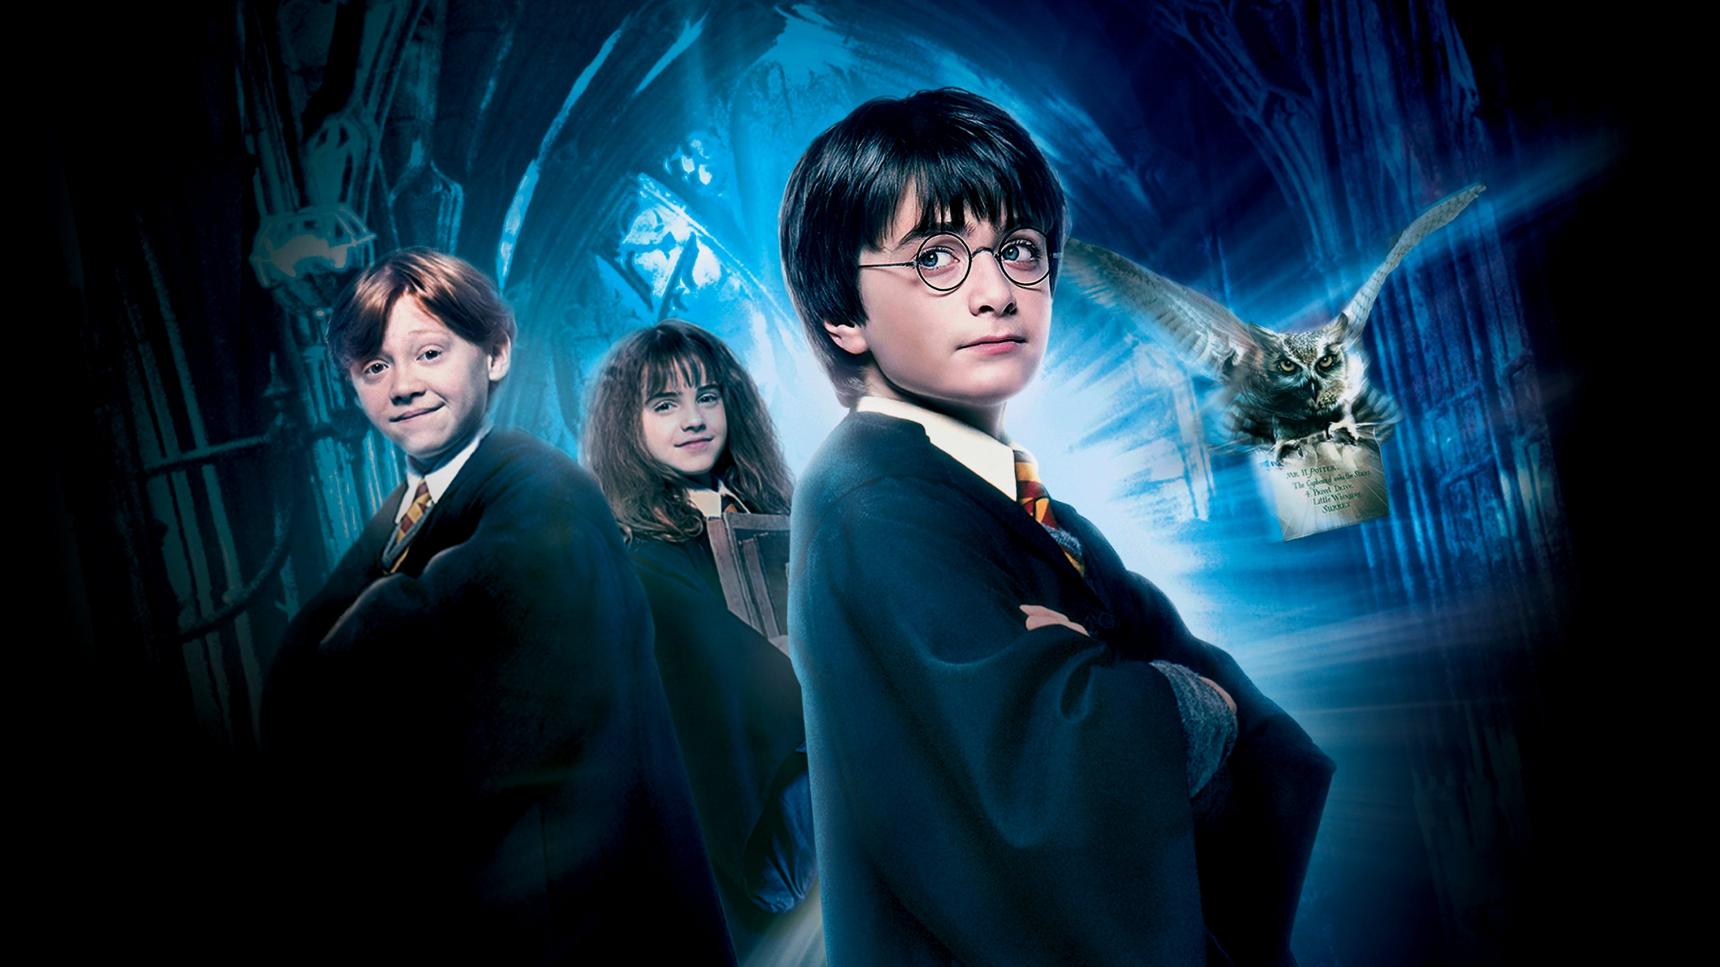 Fondo de pantalla de la película Harry Potter y la piedra filosofal en Cuevana 3 gratis